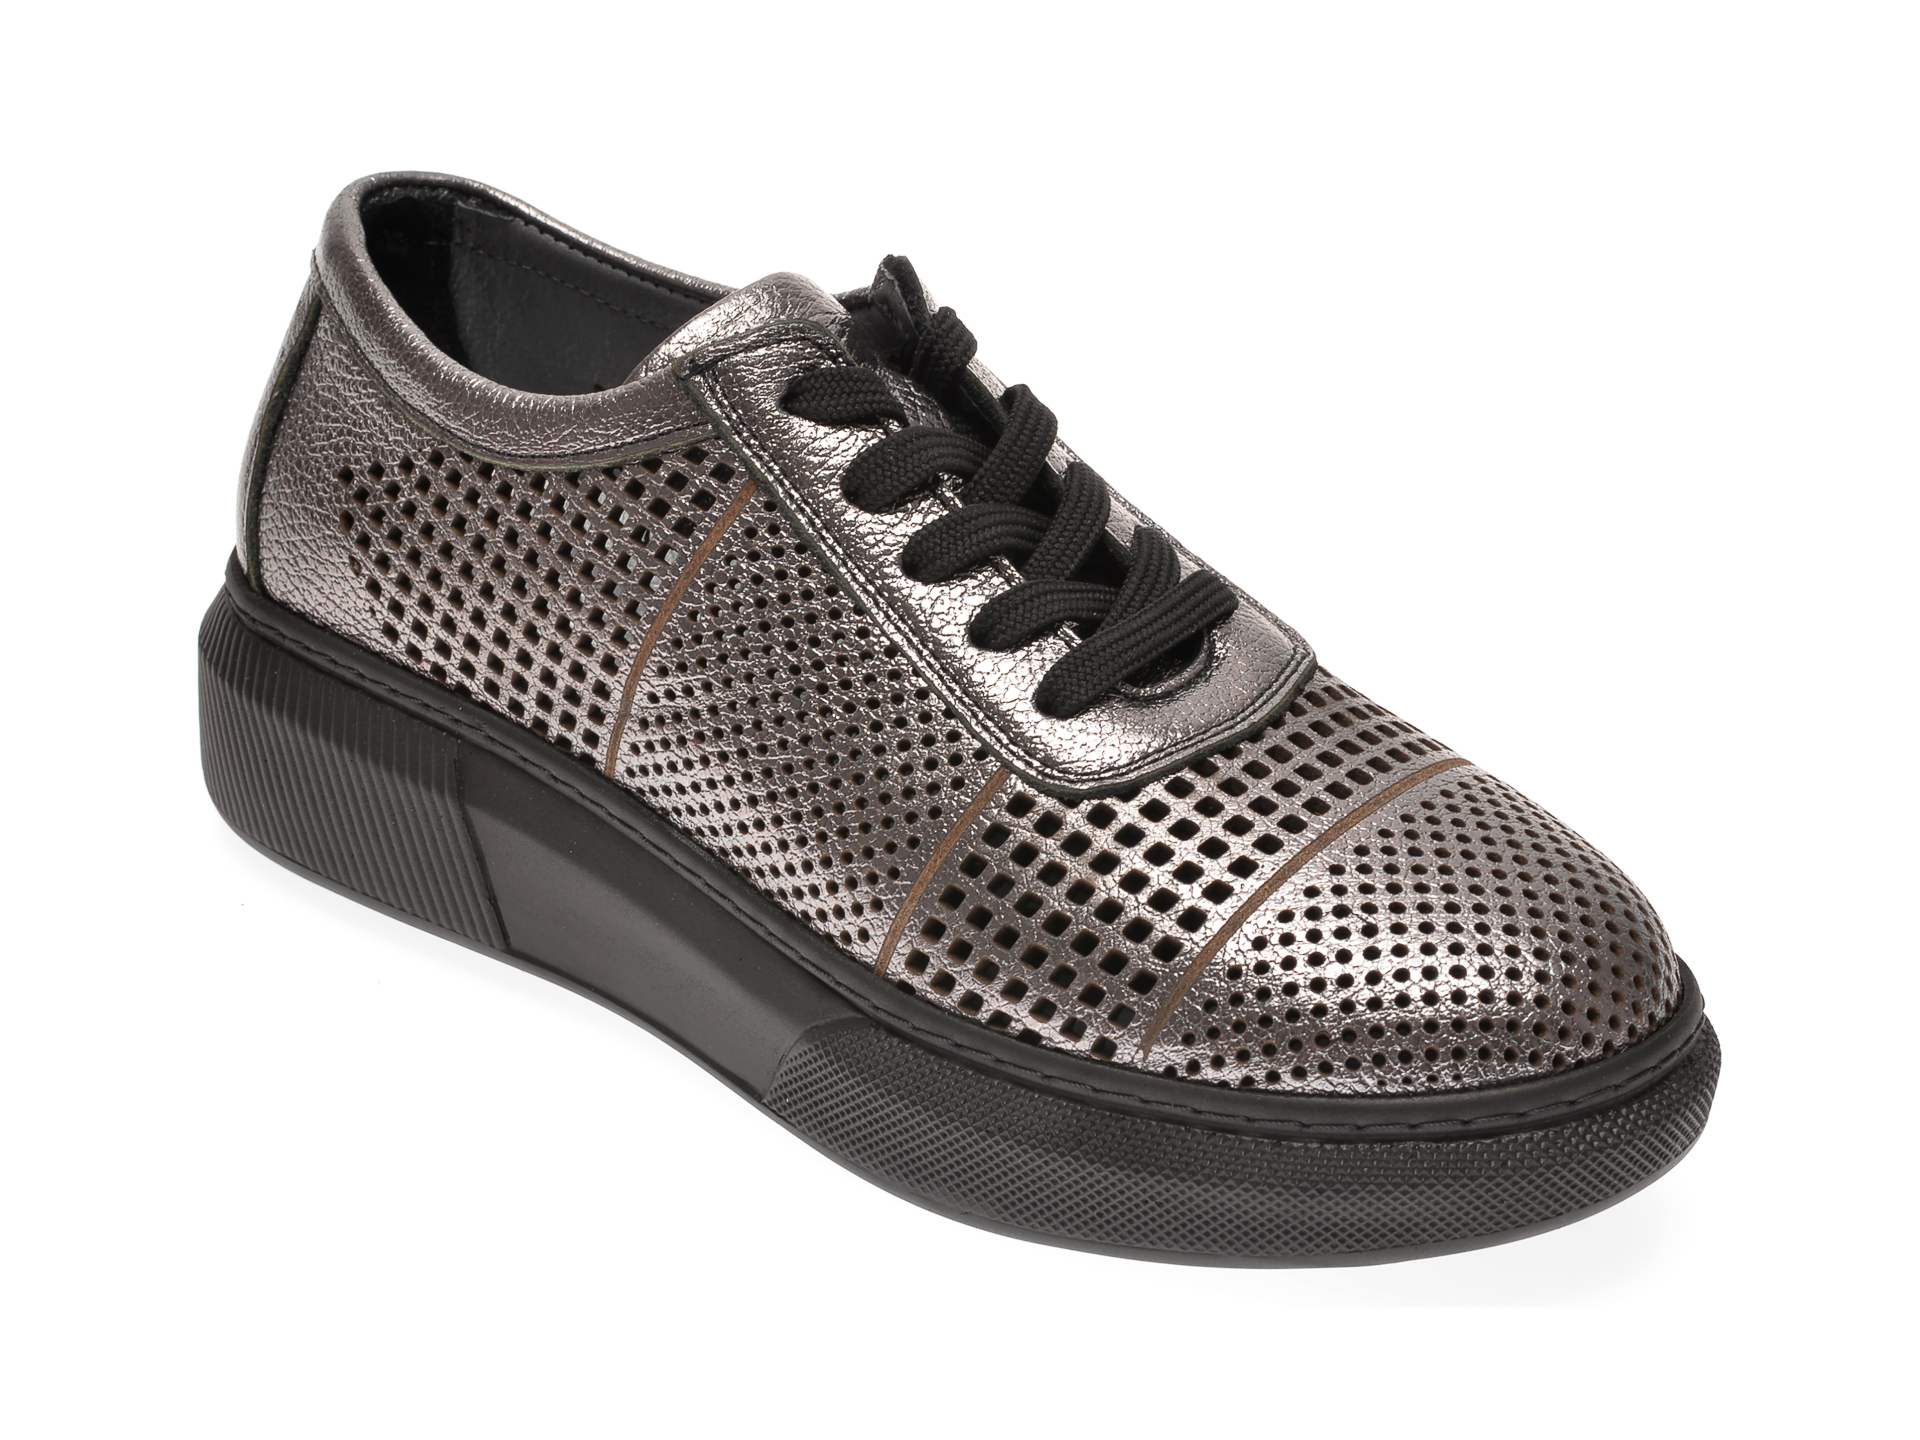 Pantofi PASS COLLECTION argintii, K21, din piele naturala